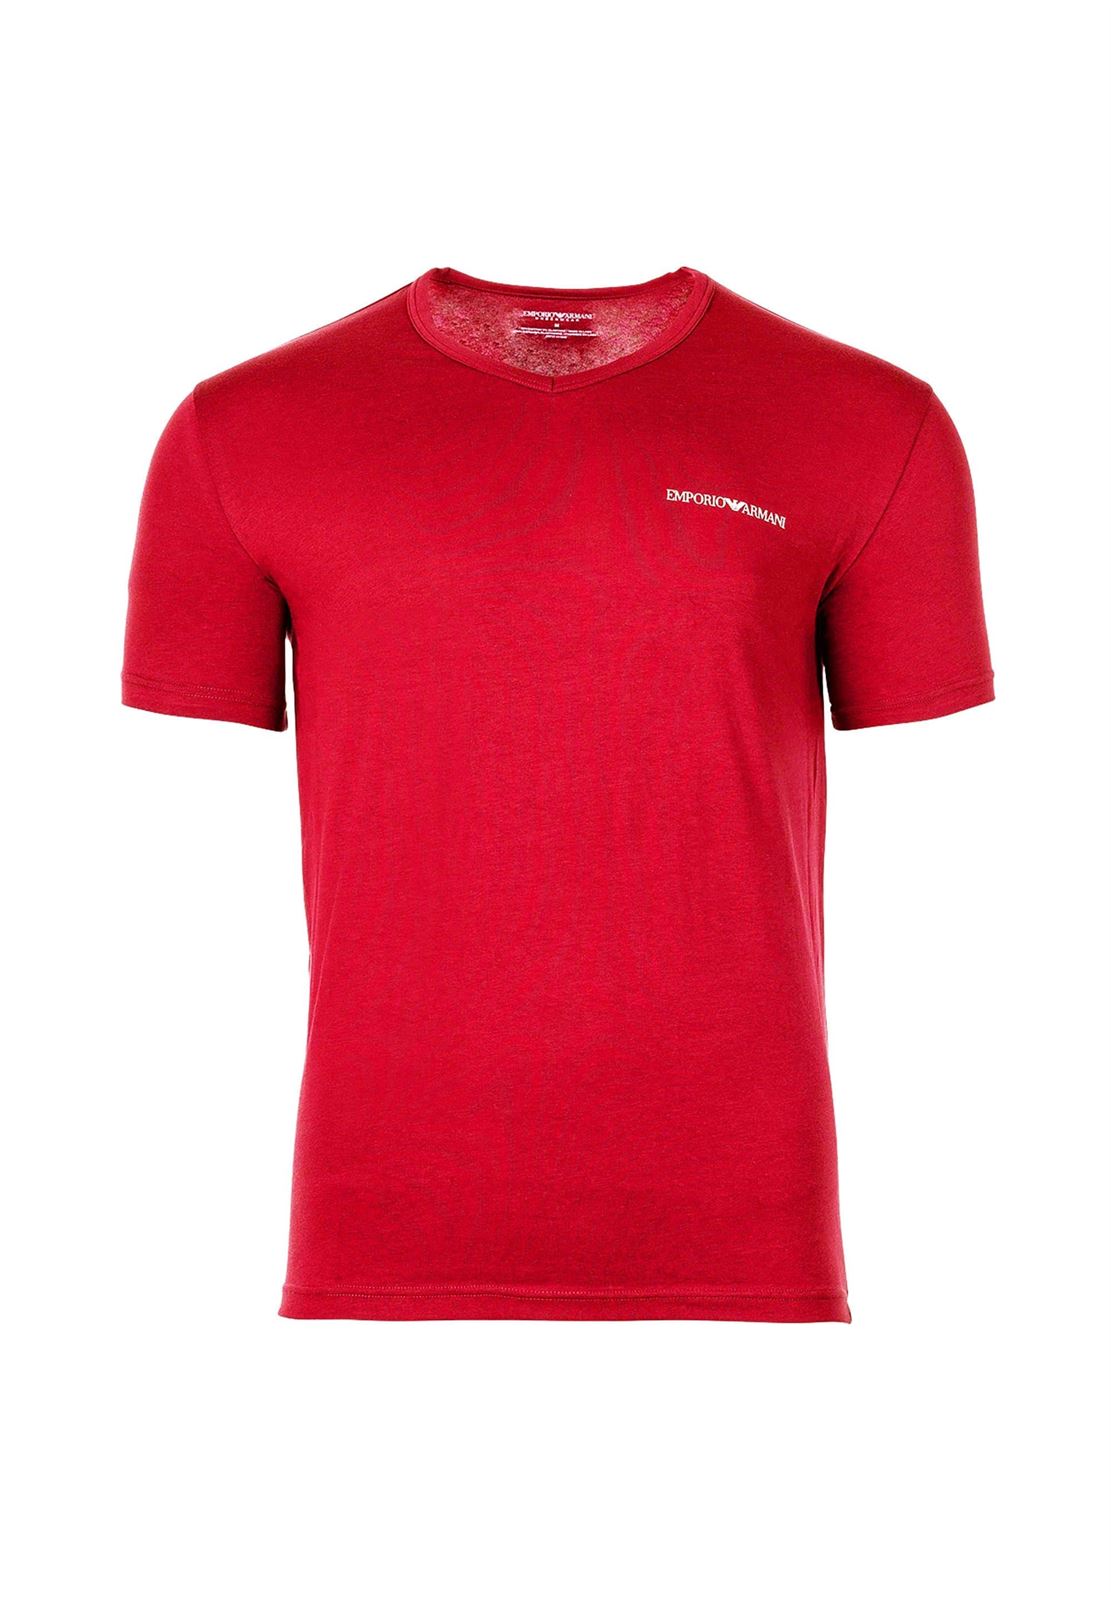 Pack 2 camisetas Emporio Armani 111267 3F717 05720 negro/rojo - Imagen 3